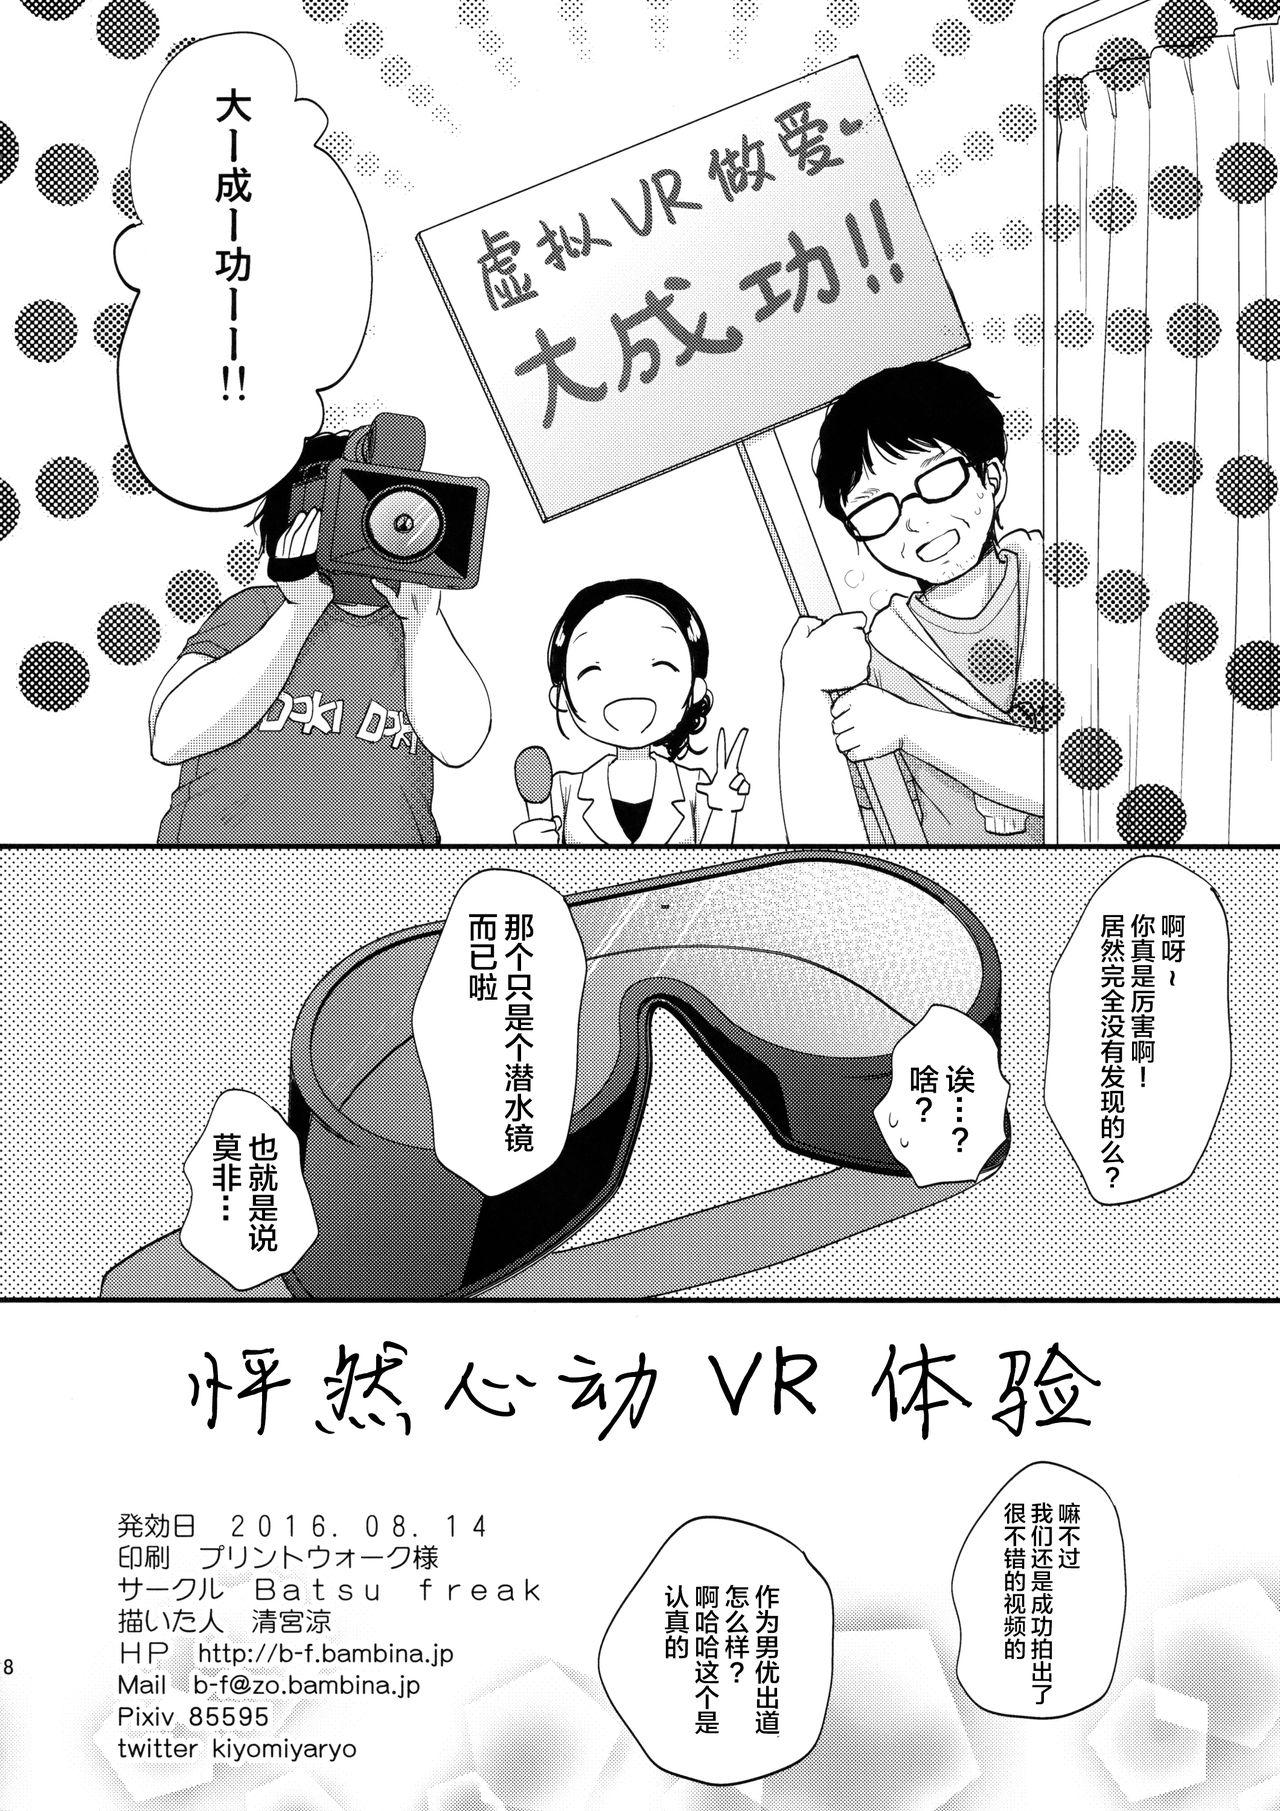 Lesbians Dokkiri VR Taiken - Original Ex Gf - Page 18